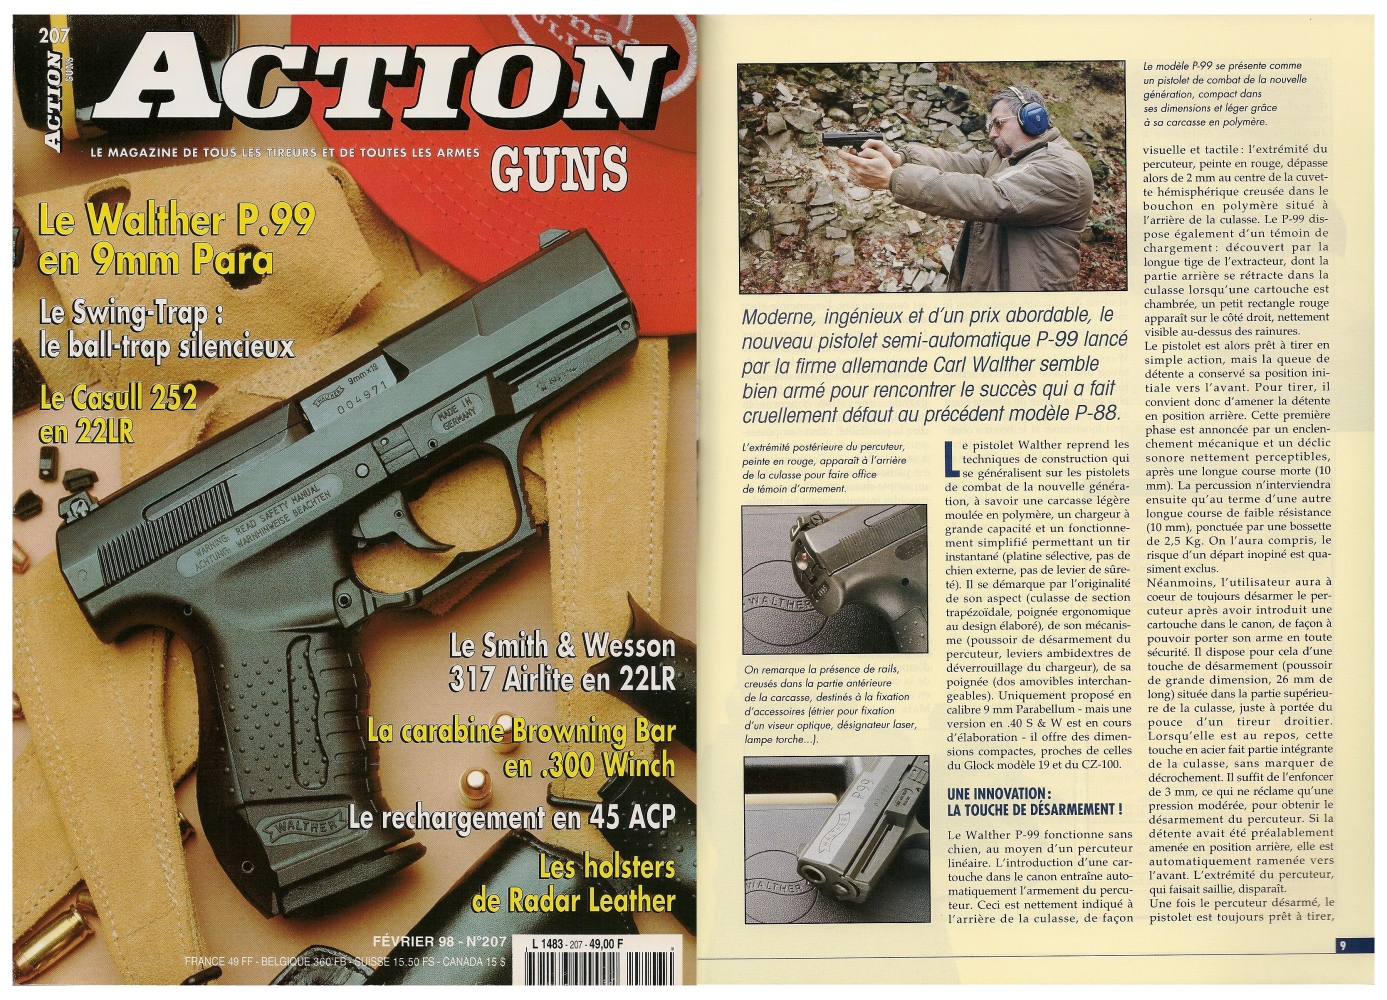 Le banc d’essai du pistolet Walther P99 a été publié sur 7 pages dans le magazine Action Guns n°207 (février 1998)